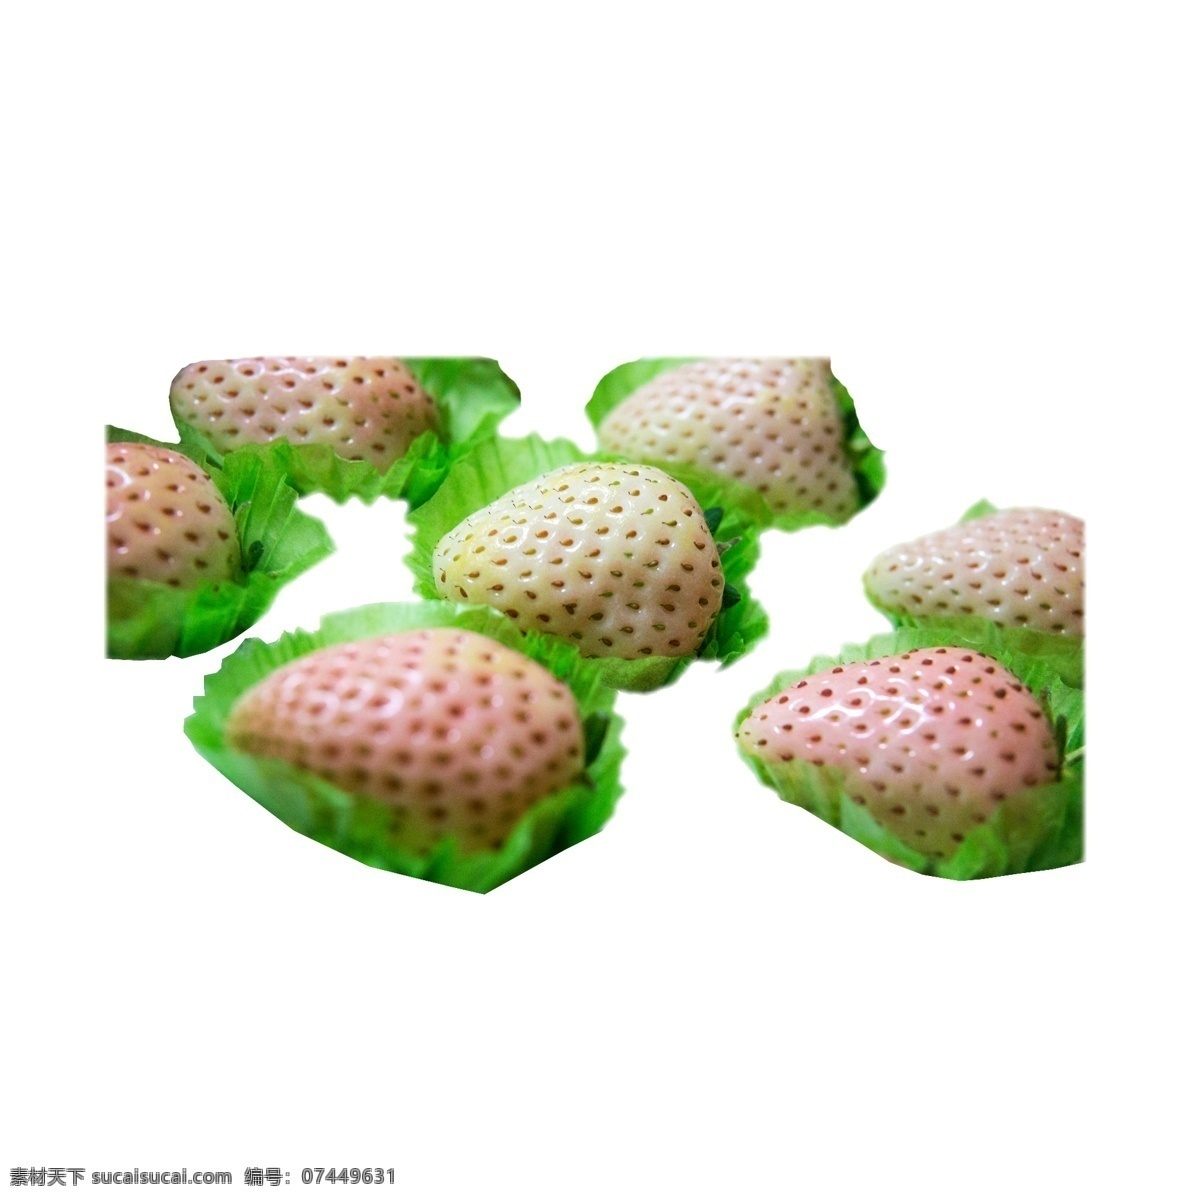 一些 美味 白 草莓 水果 浆果 新鲜草莓 有机草莓 白草莓 牛奶草莓 美味的 白雪公主 日本草莓